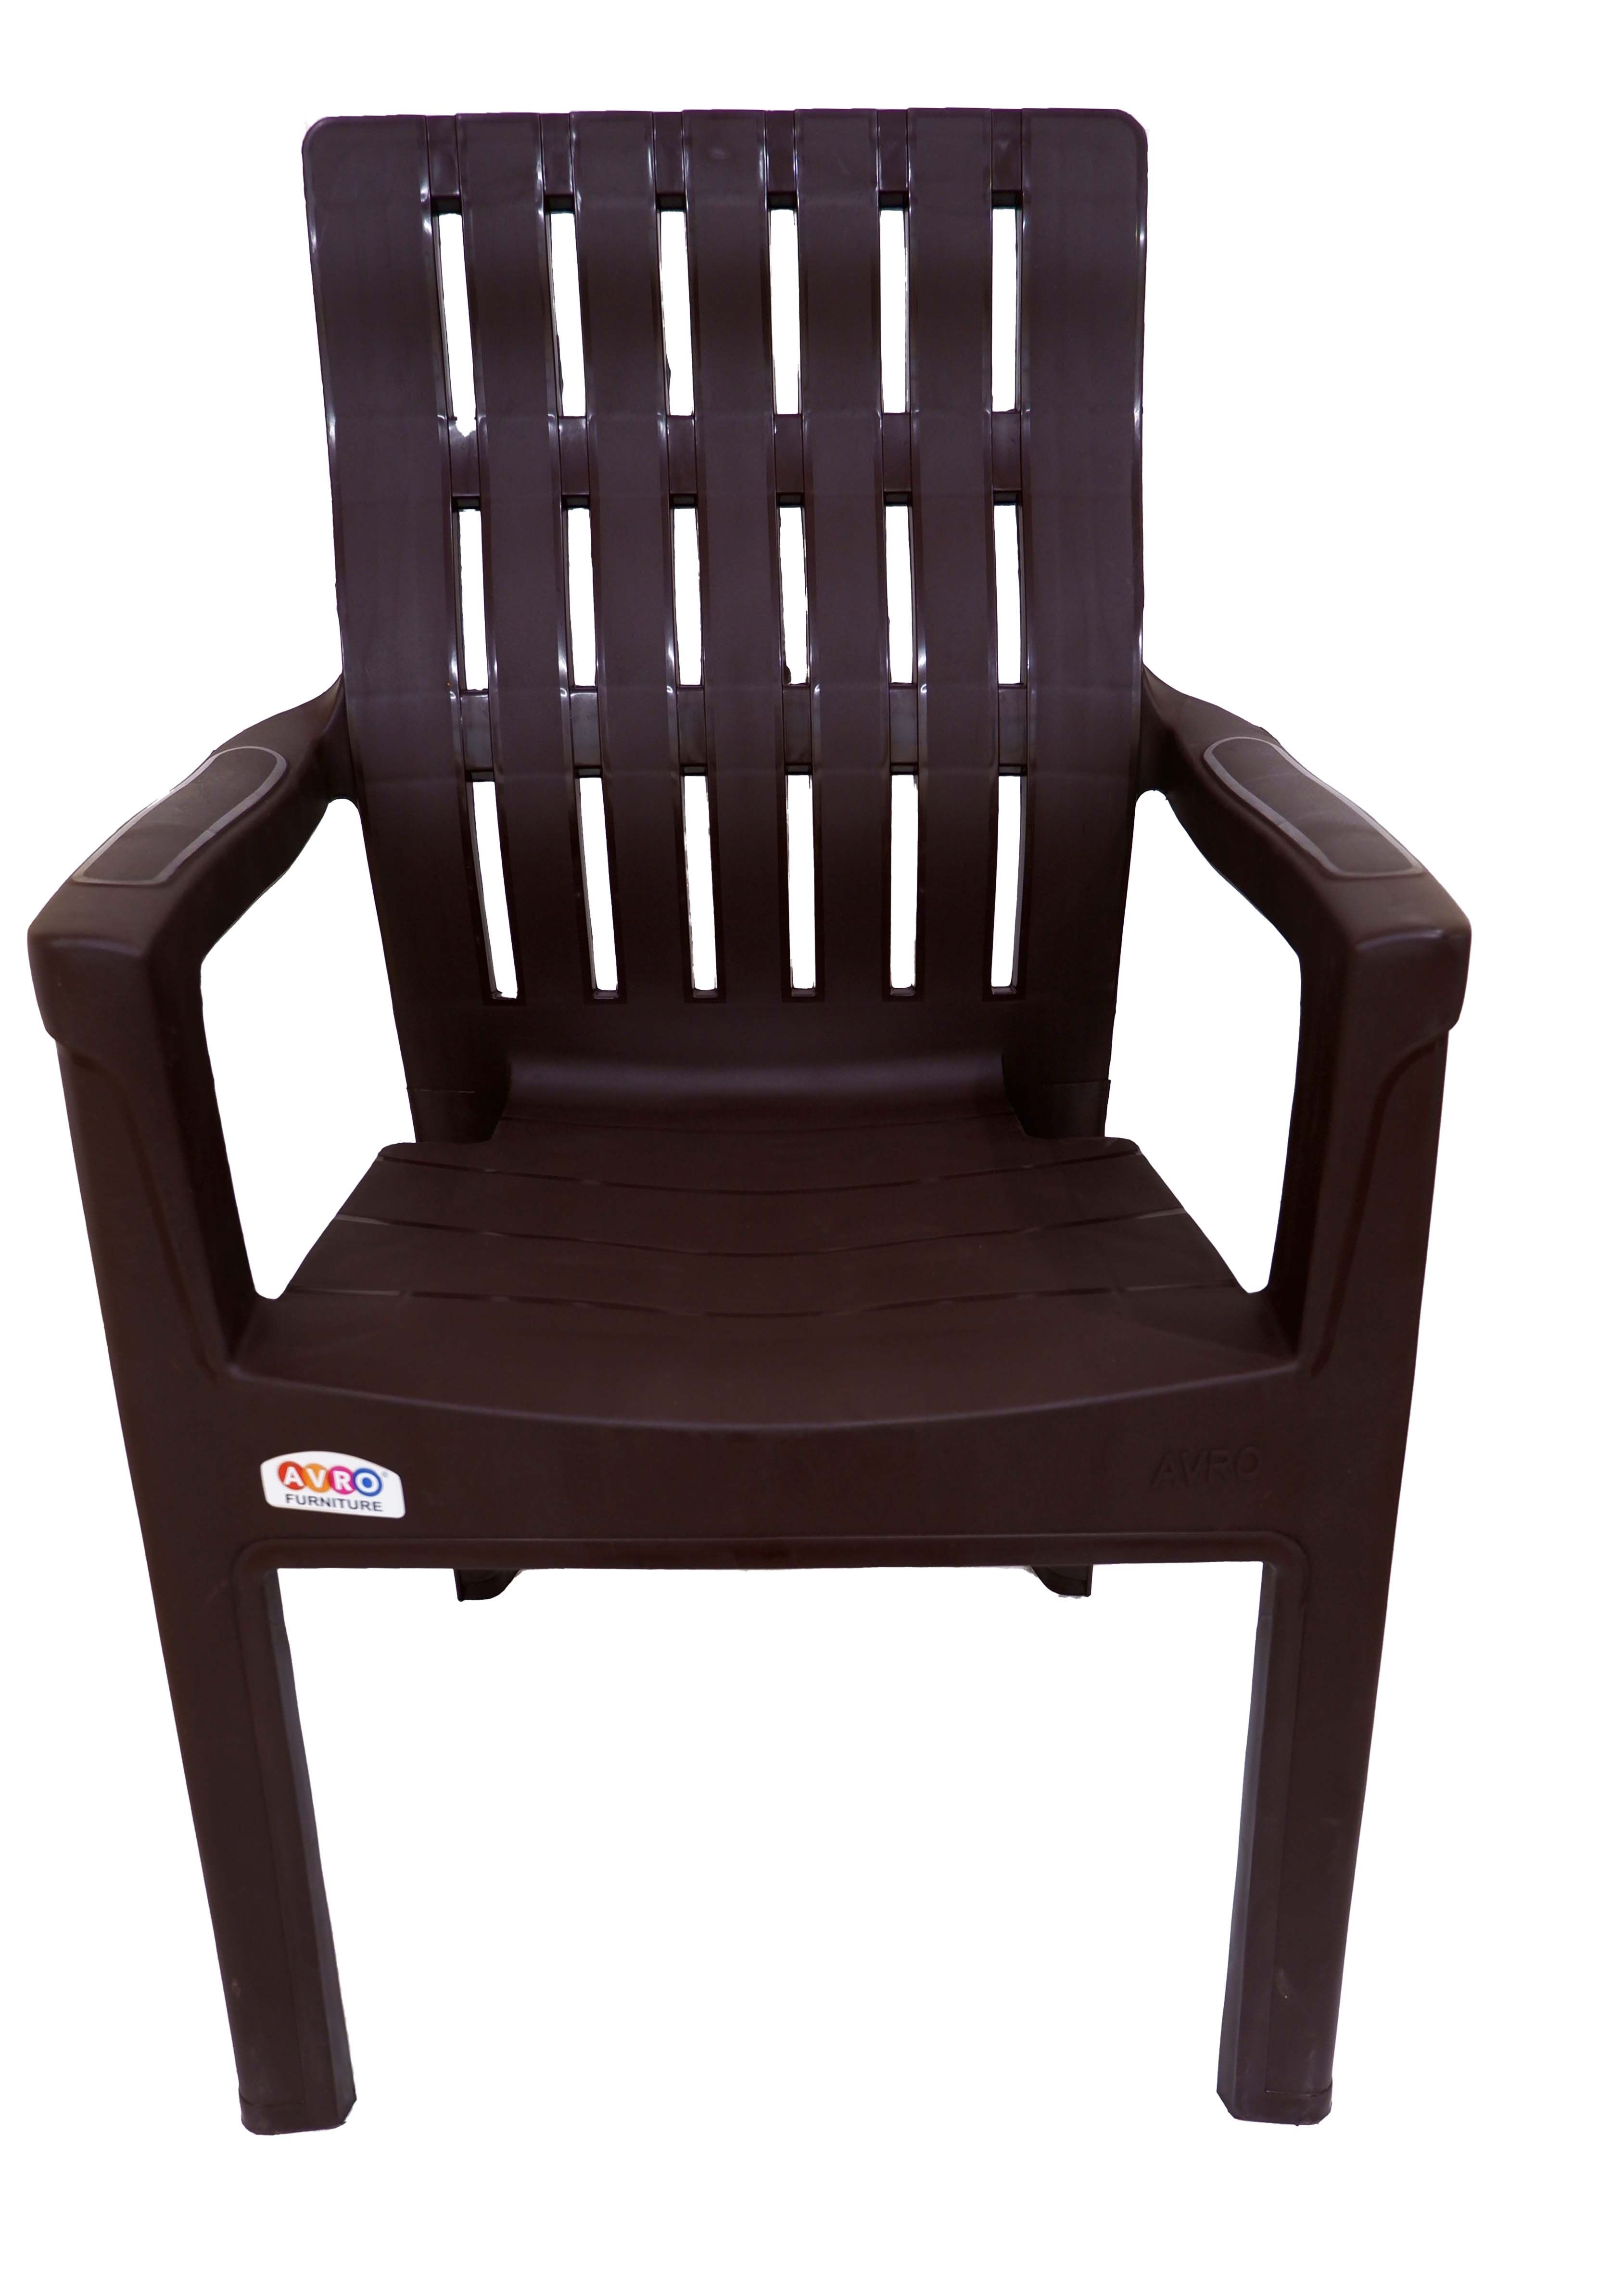 9998 Matt & Gloss Chair